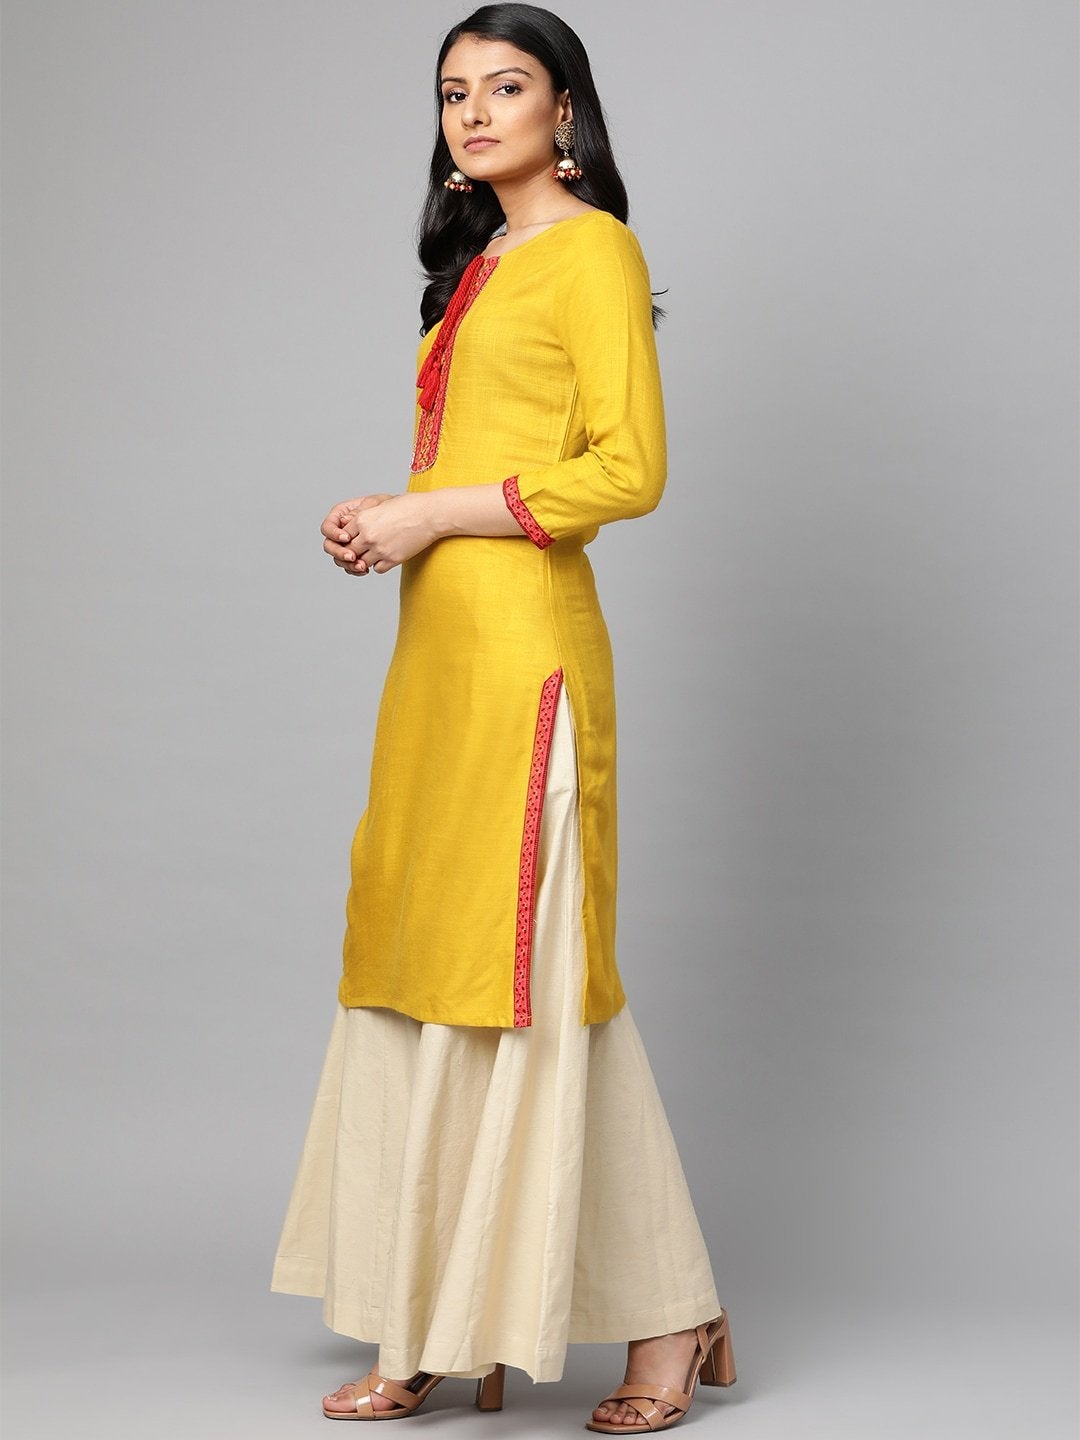 Women's Mustard Yellow & Pink Yoke Design Straight Kurta - Meeranshi